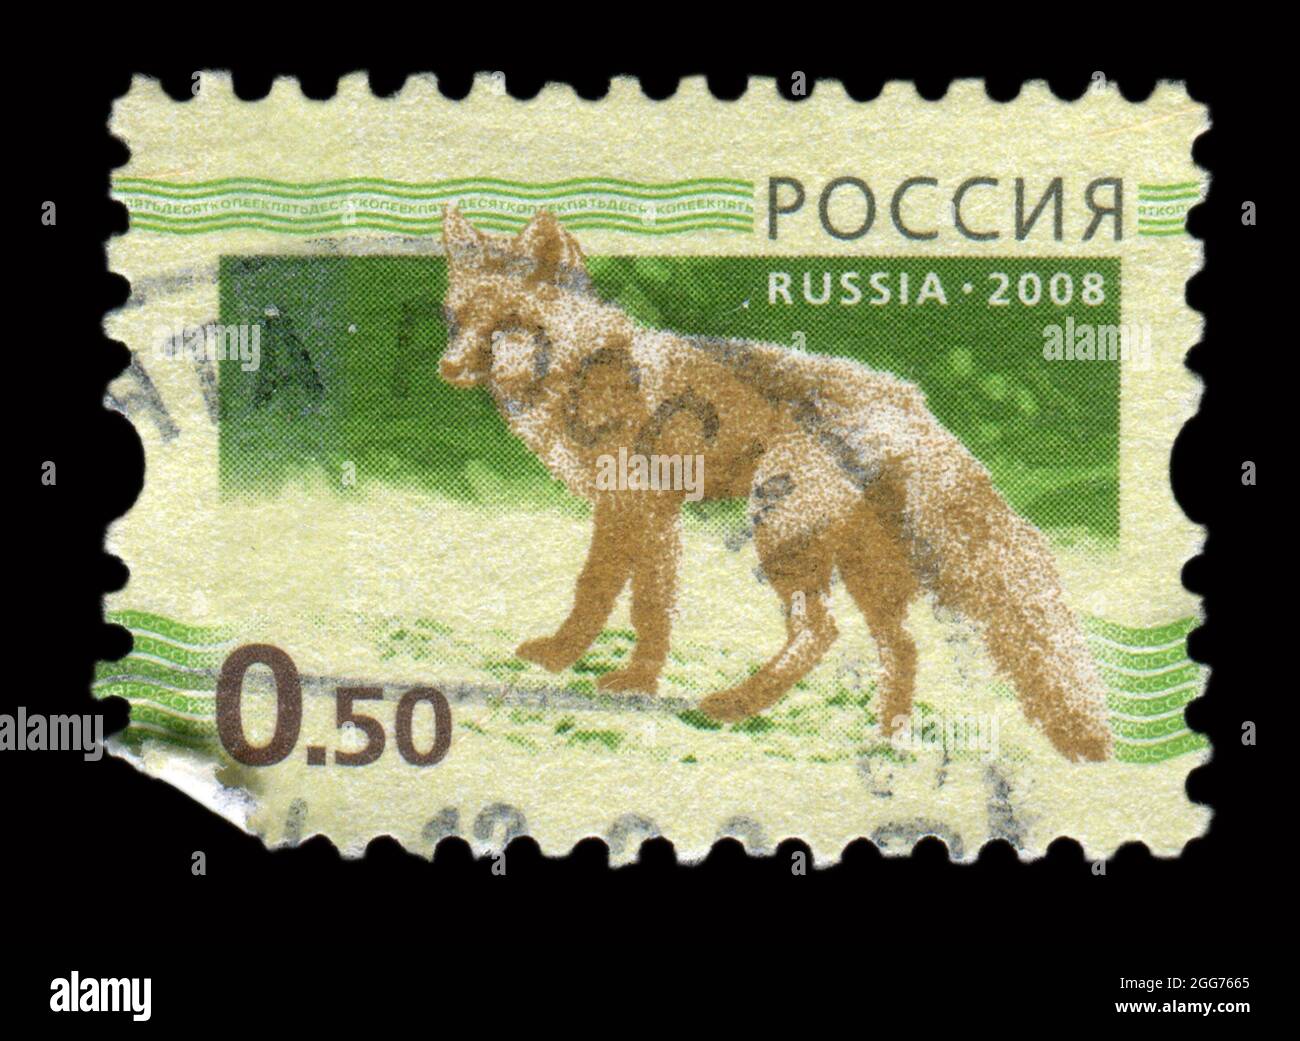 Timbro stampato in Russia mostra l'immagine della volpe, circa 2008. Foto Stock